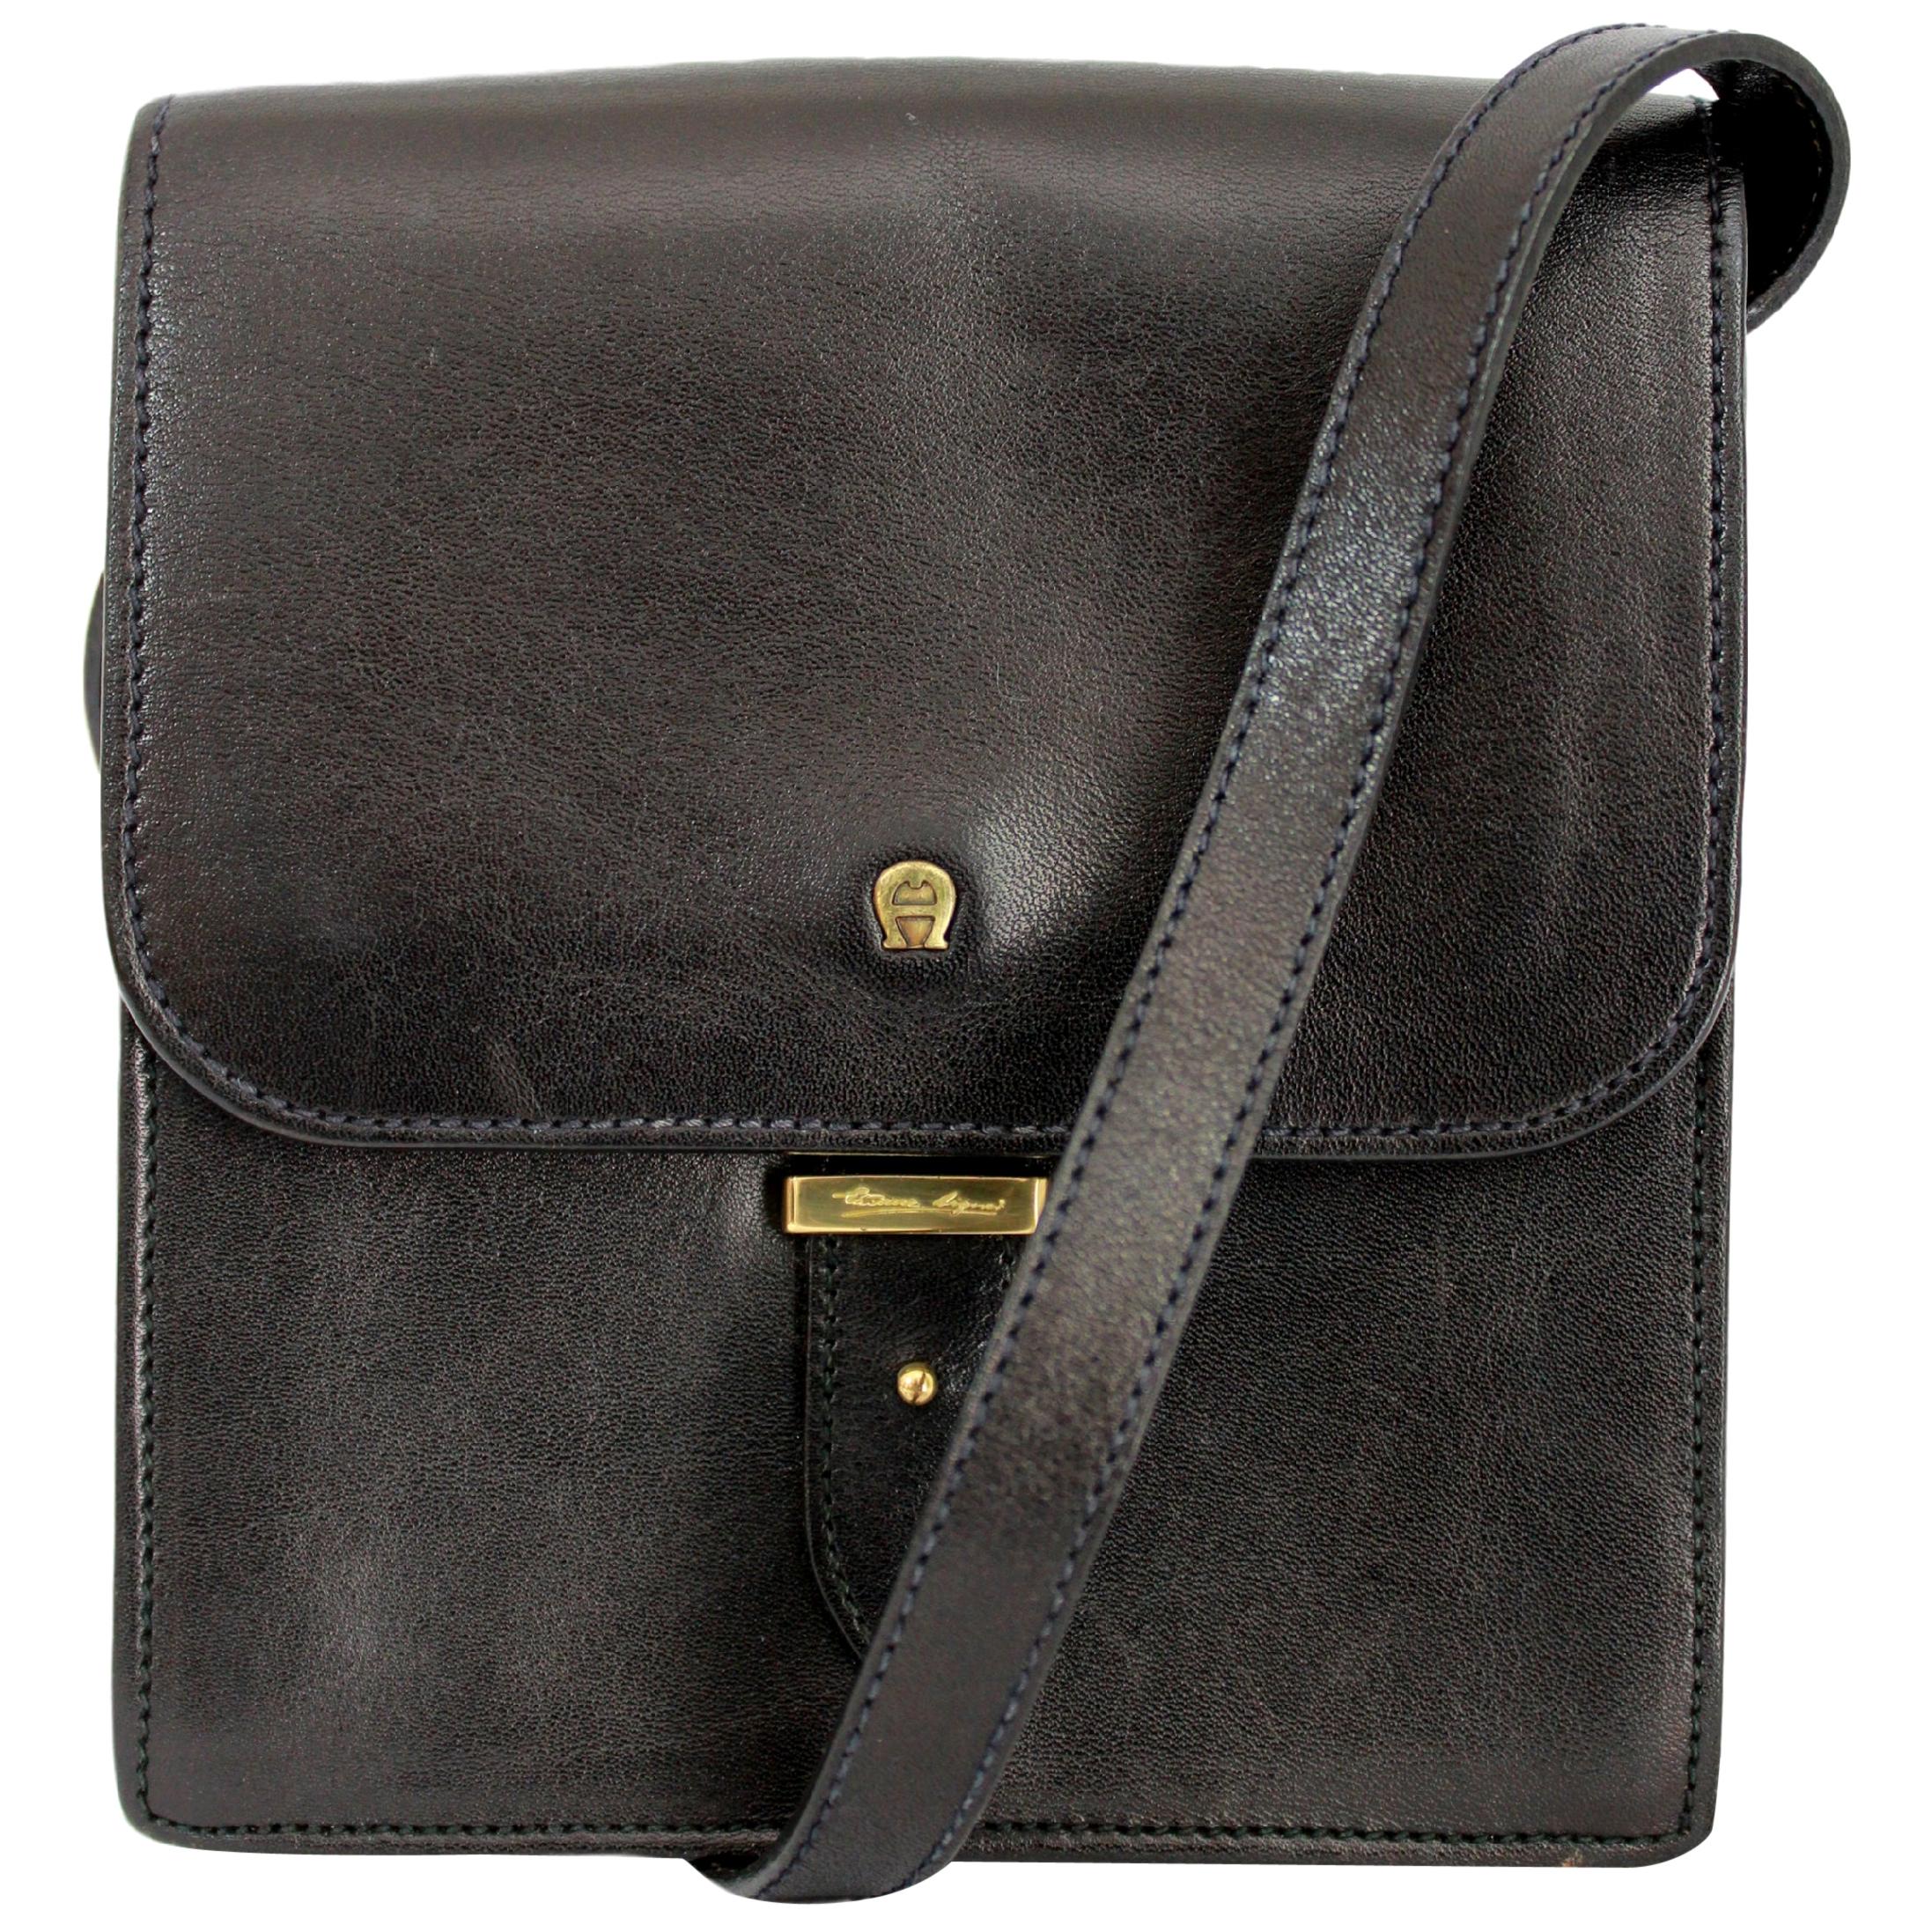 Vintage Etienne Aigner Handbags - For Sale on 1stDibs | etienne aigner bags aigner purses, vintage aigner bag